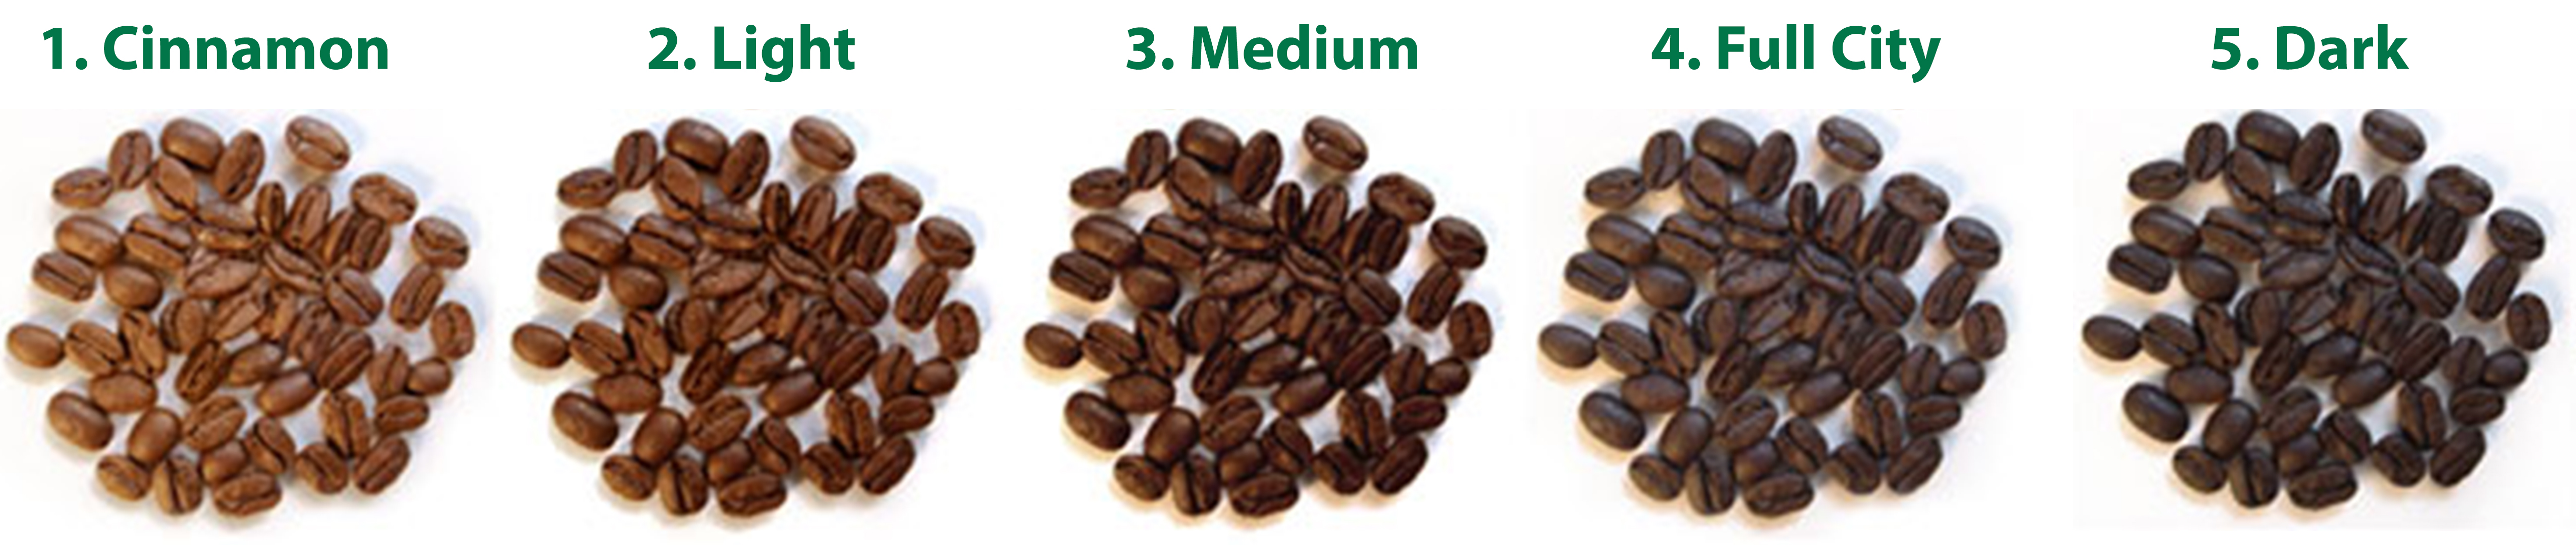 cấp độ rang hạt cà phê